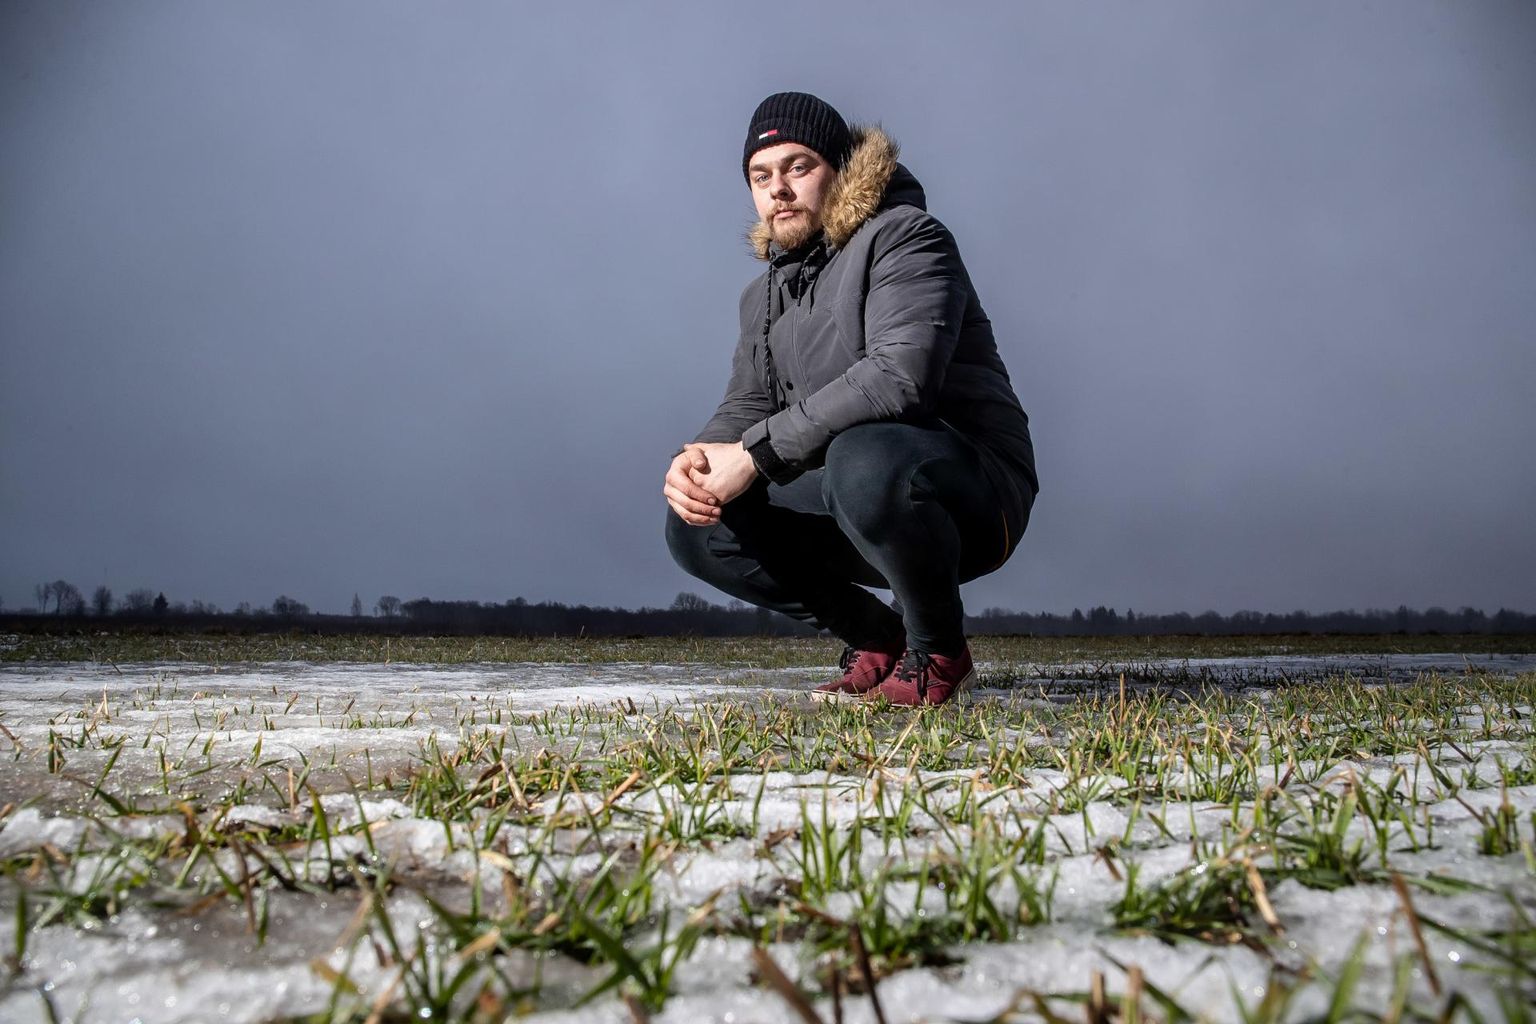 OÜ Reinu-Einari ettevõttes töötav põllumees Markus Aavekukk talivilja põllul.
 